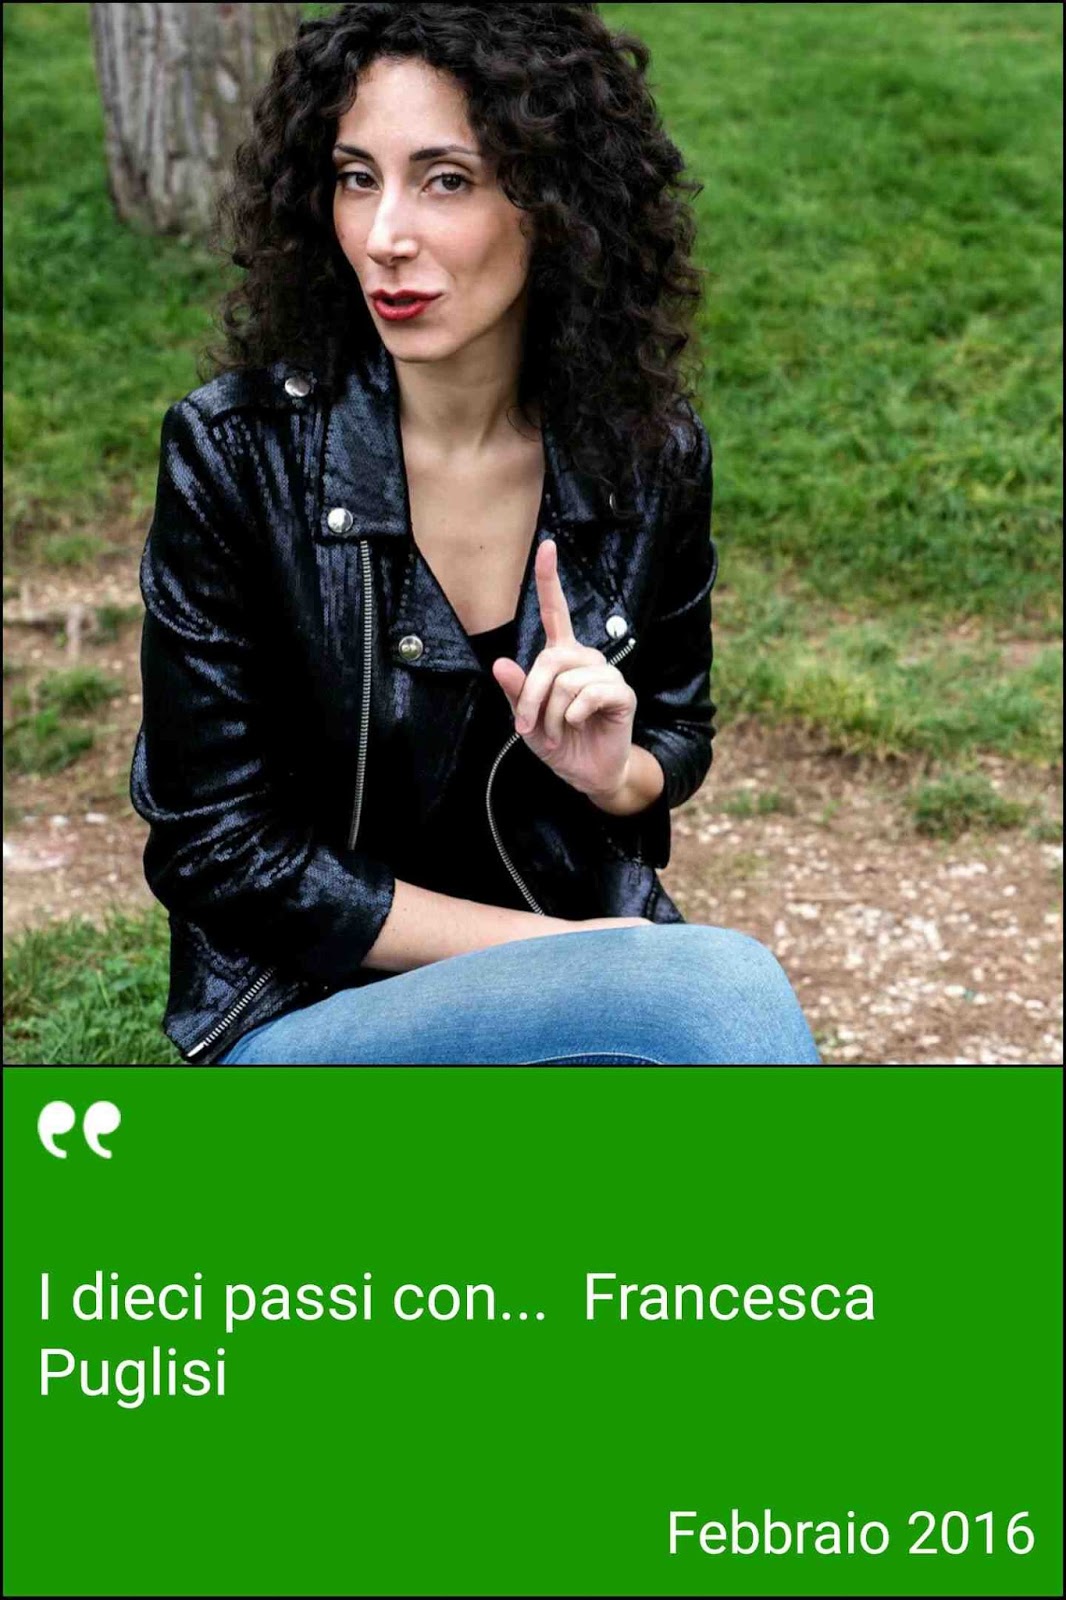 Intervista con Francesca Puglisi (attrice teatrale) per la rubrica culturale